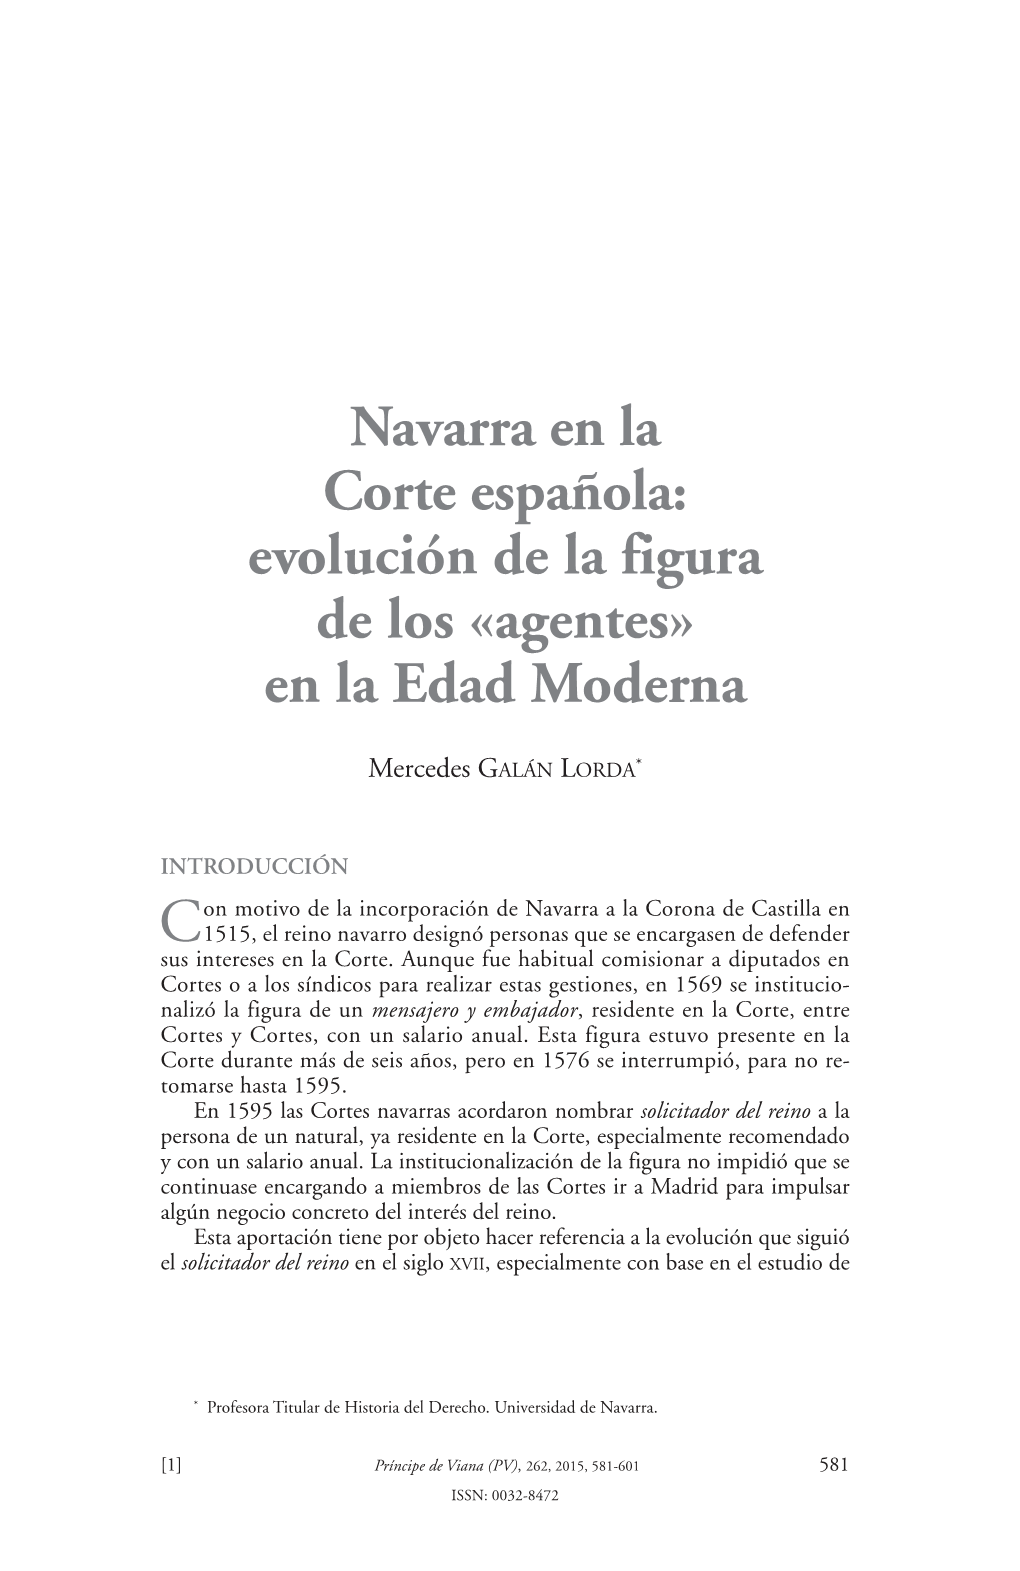 Navarra En La Corte Española: Evolución De La Figura De Los «Agentes» En La Edad Moderna